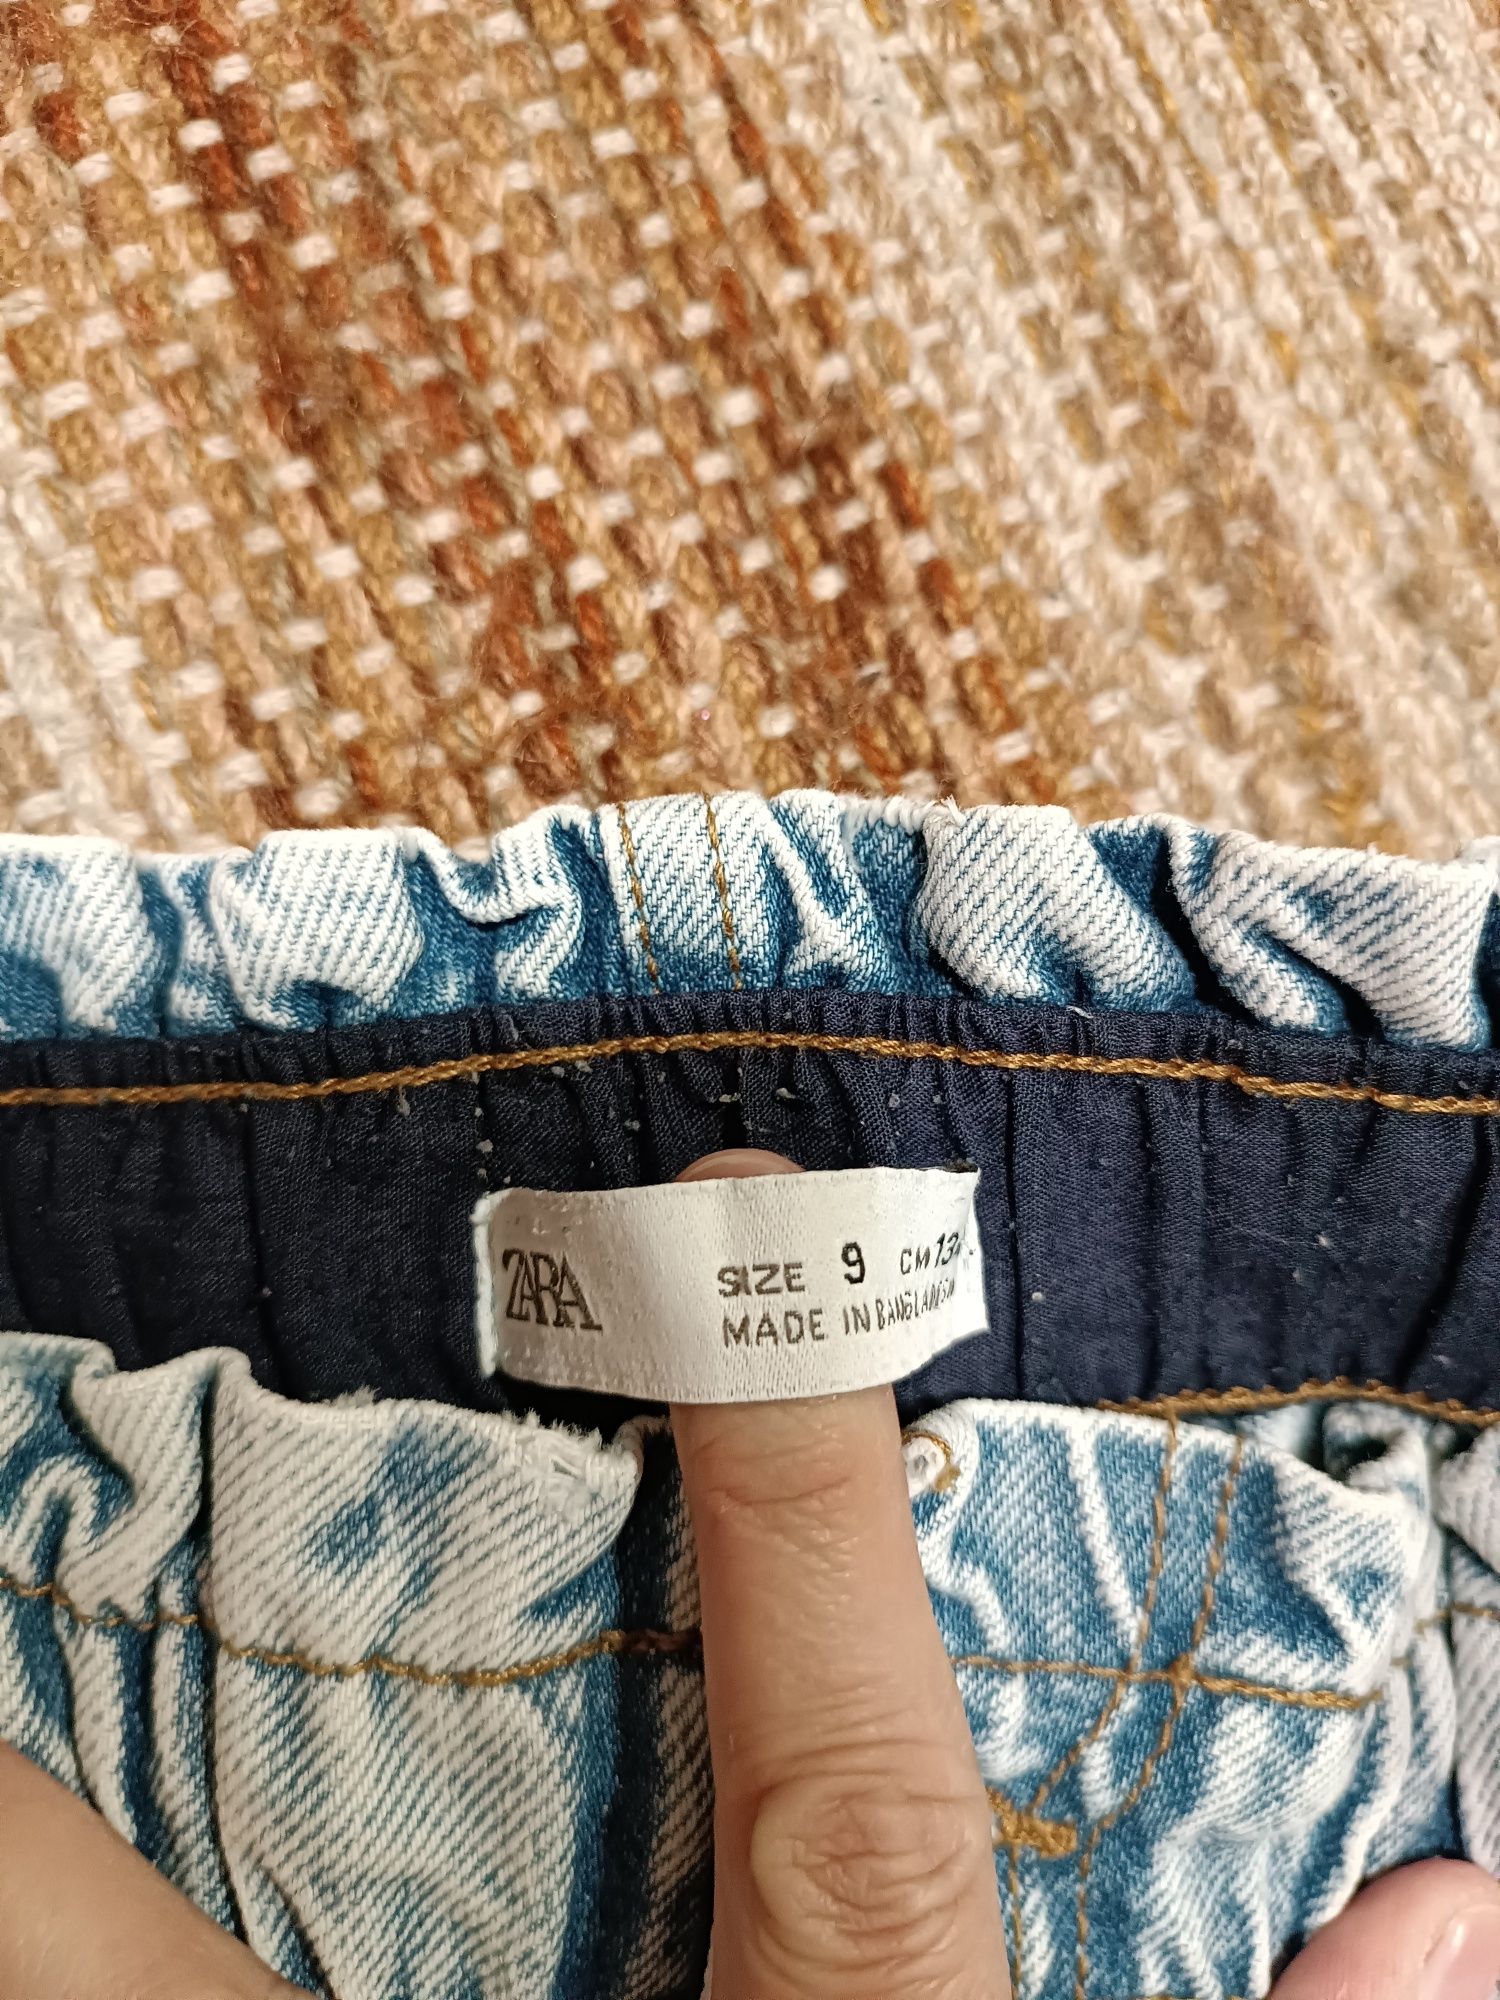 Calças de ganga marca Zara tamanho 9 anos